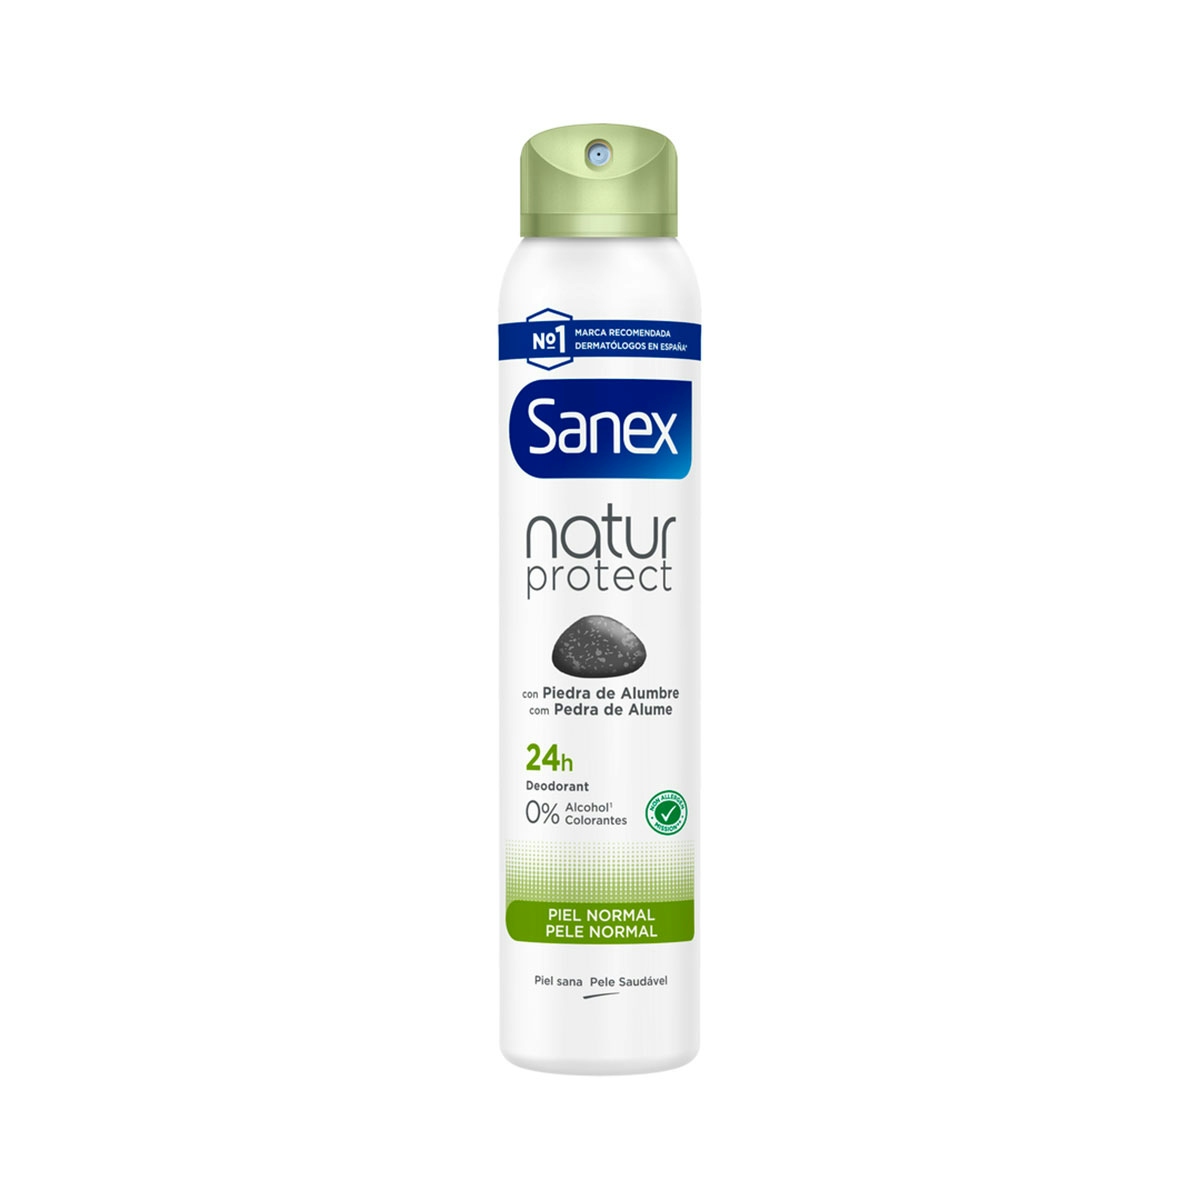 Desodorante spray Sanex Natur Protect piel normal 24h con piedra de alumbre 200ml